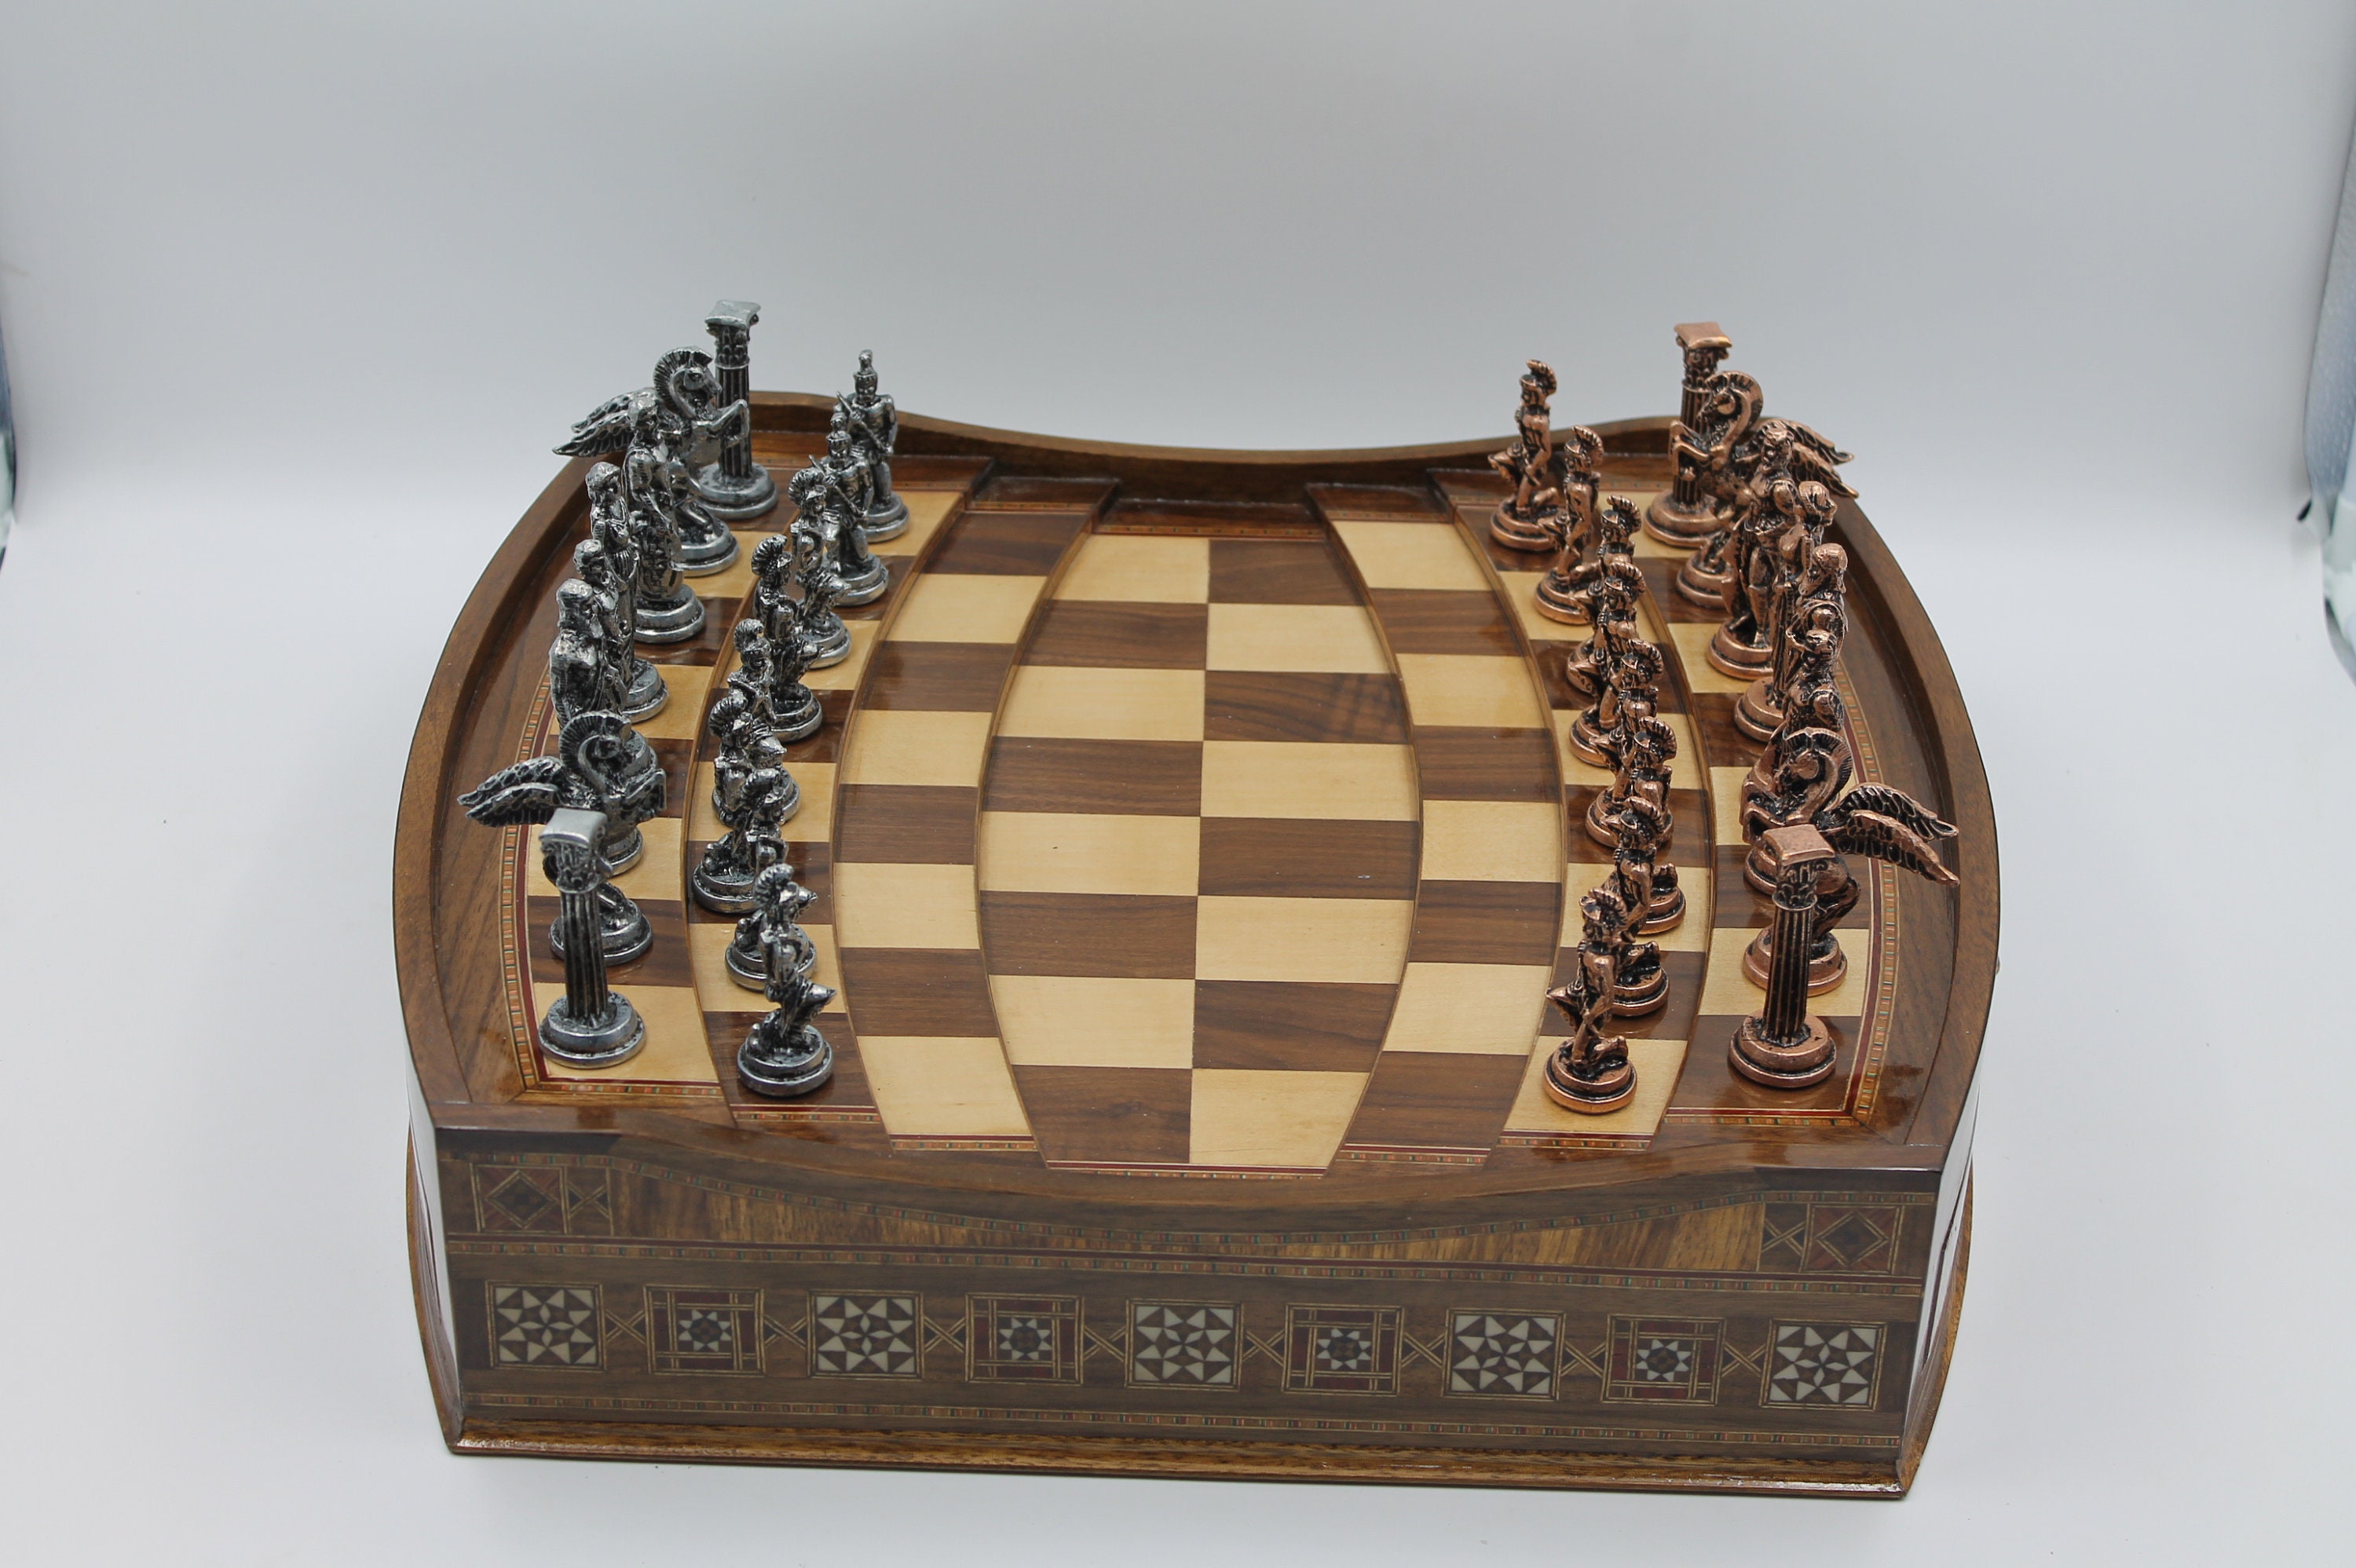 Arena Luxury Chess Set